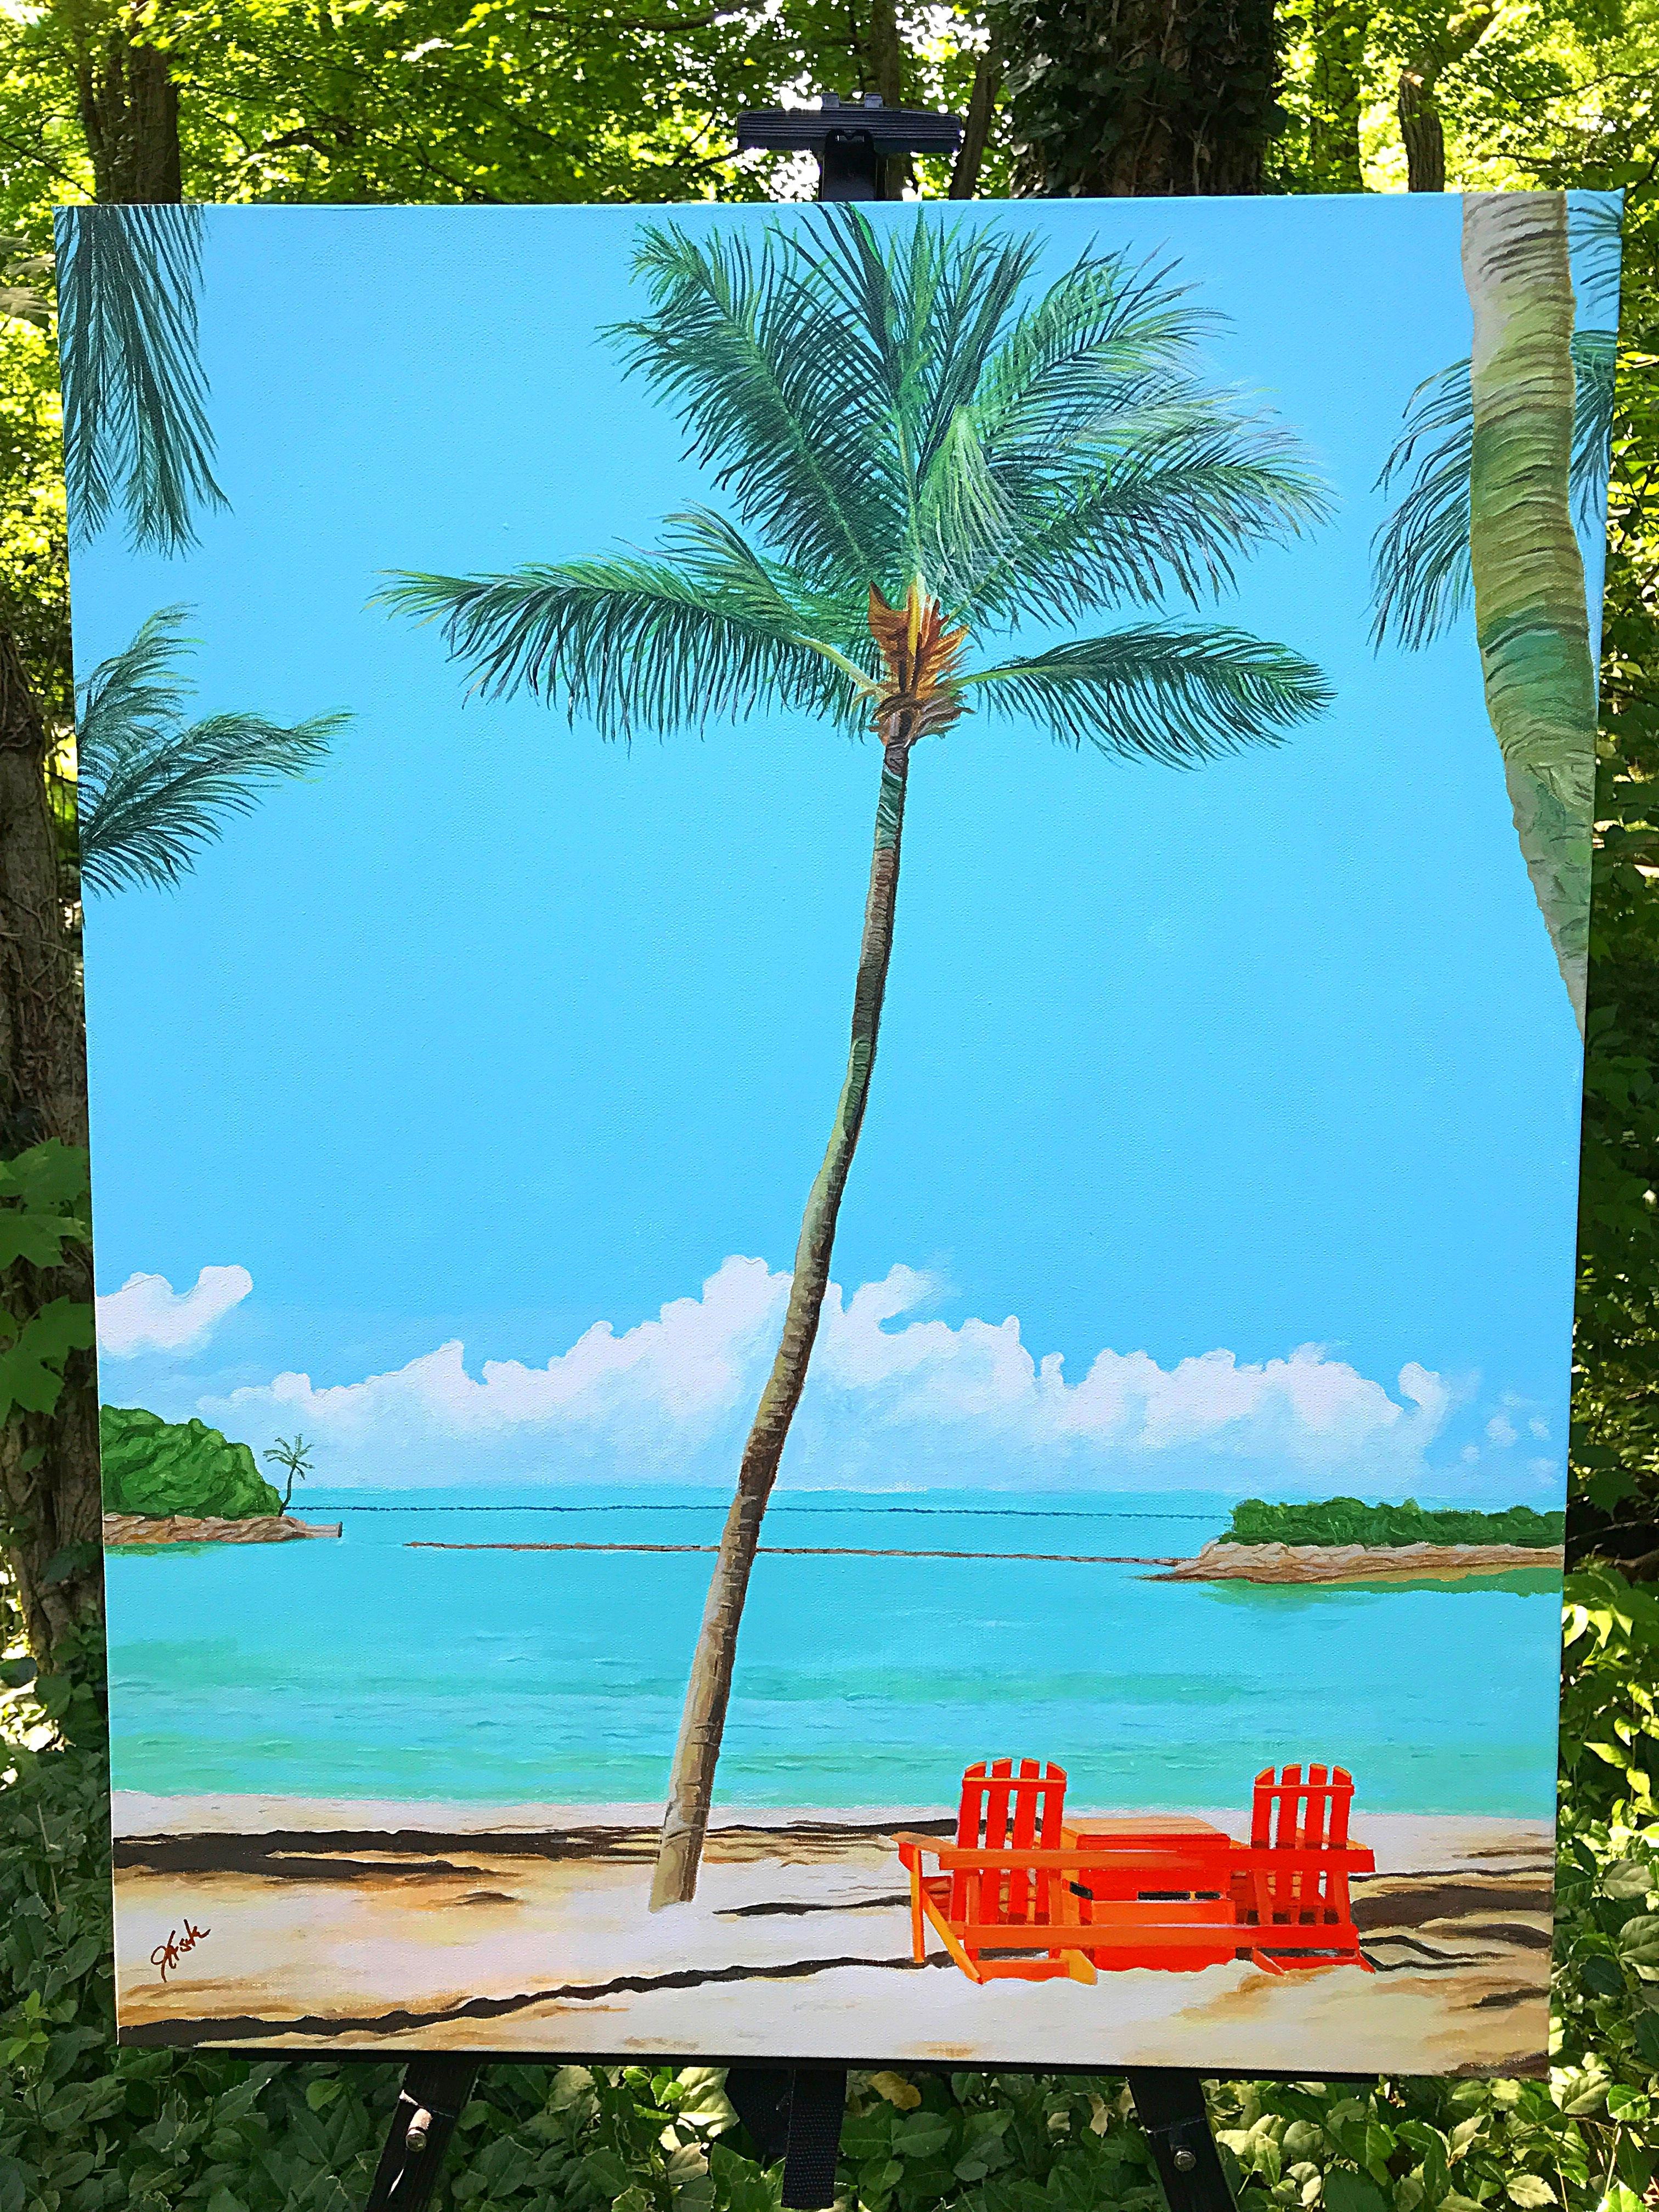 <p>Kommentare des Künstlers<br>Der Künstler John Jaster zeigt eine entspannende Sommerszene mit blauem Himmel und türkisfarbenem Meer, das an einen weißen Sandstrand plätschert. Zwei leere rote Stühle warten darauf, besetzt zu werden. Eine hohe